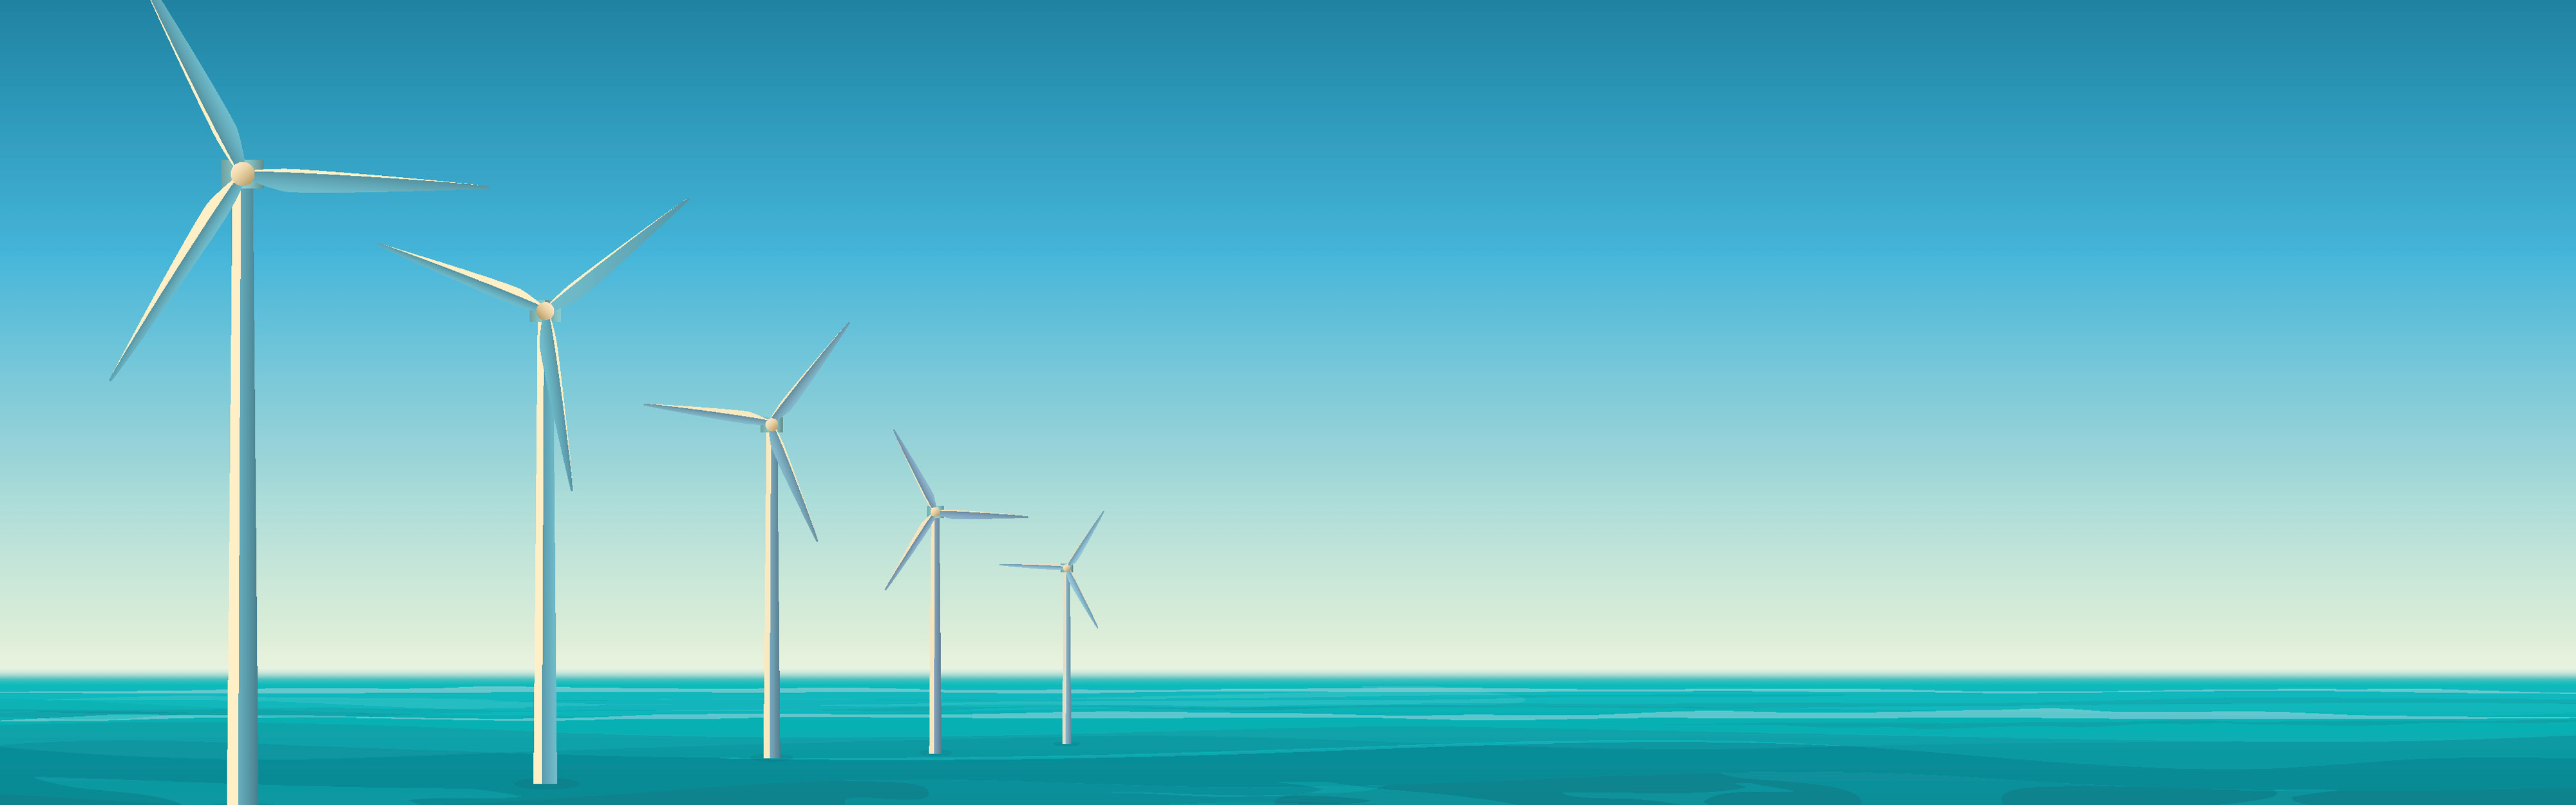 Five wind turbines standing in the ocean.